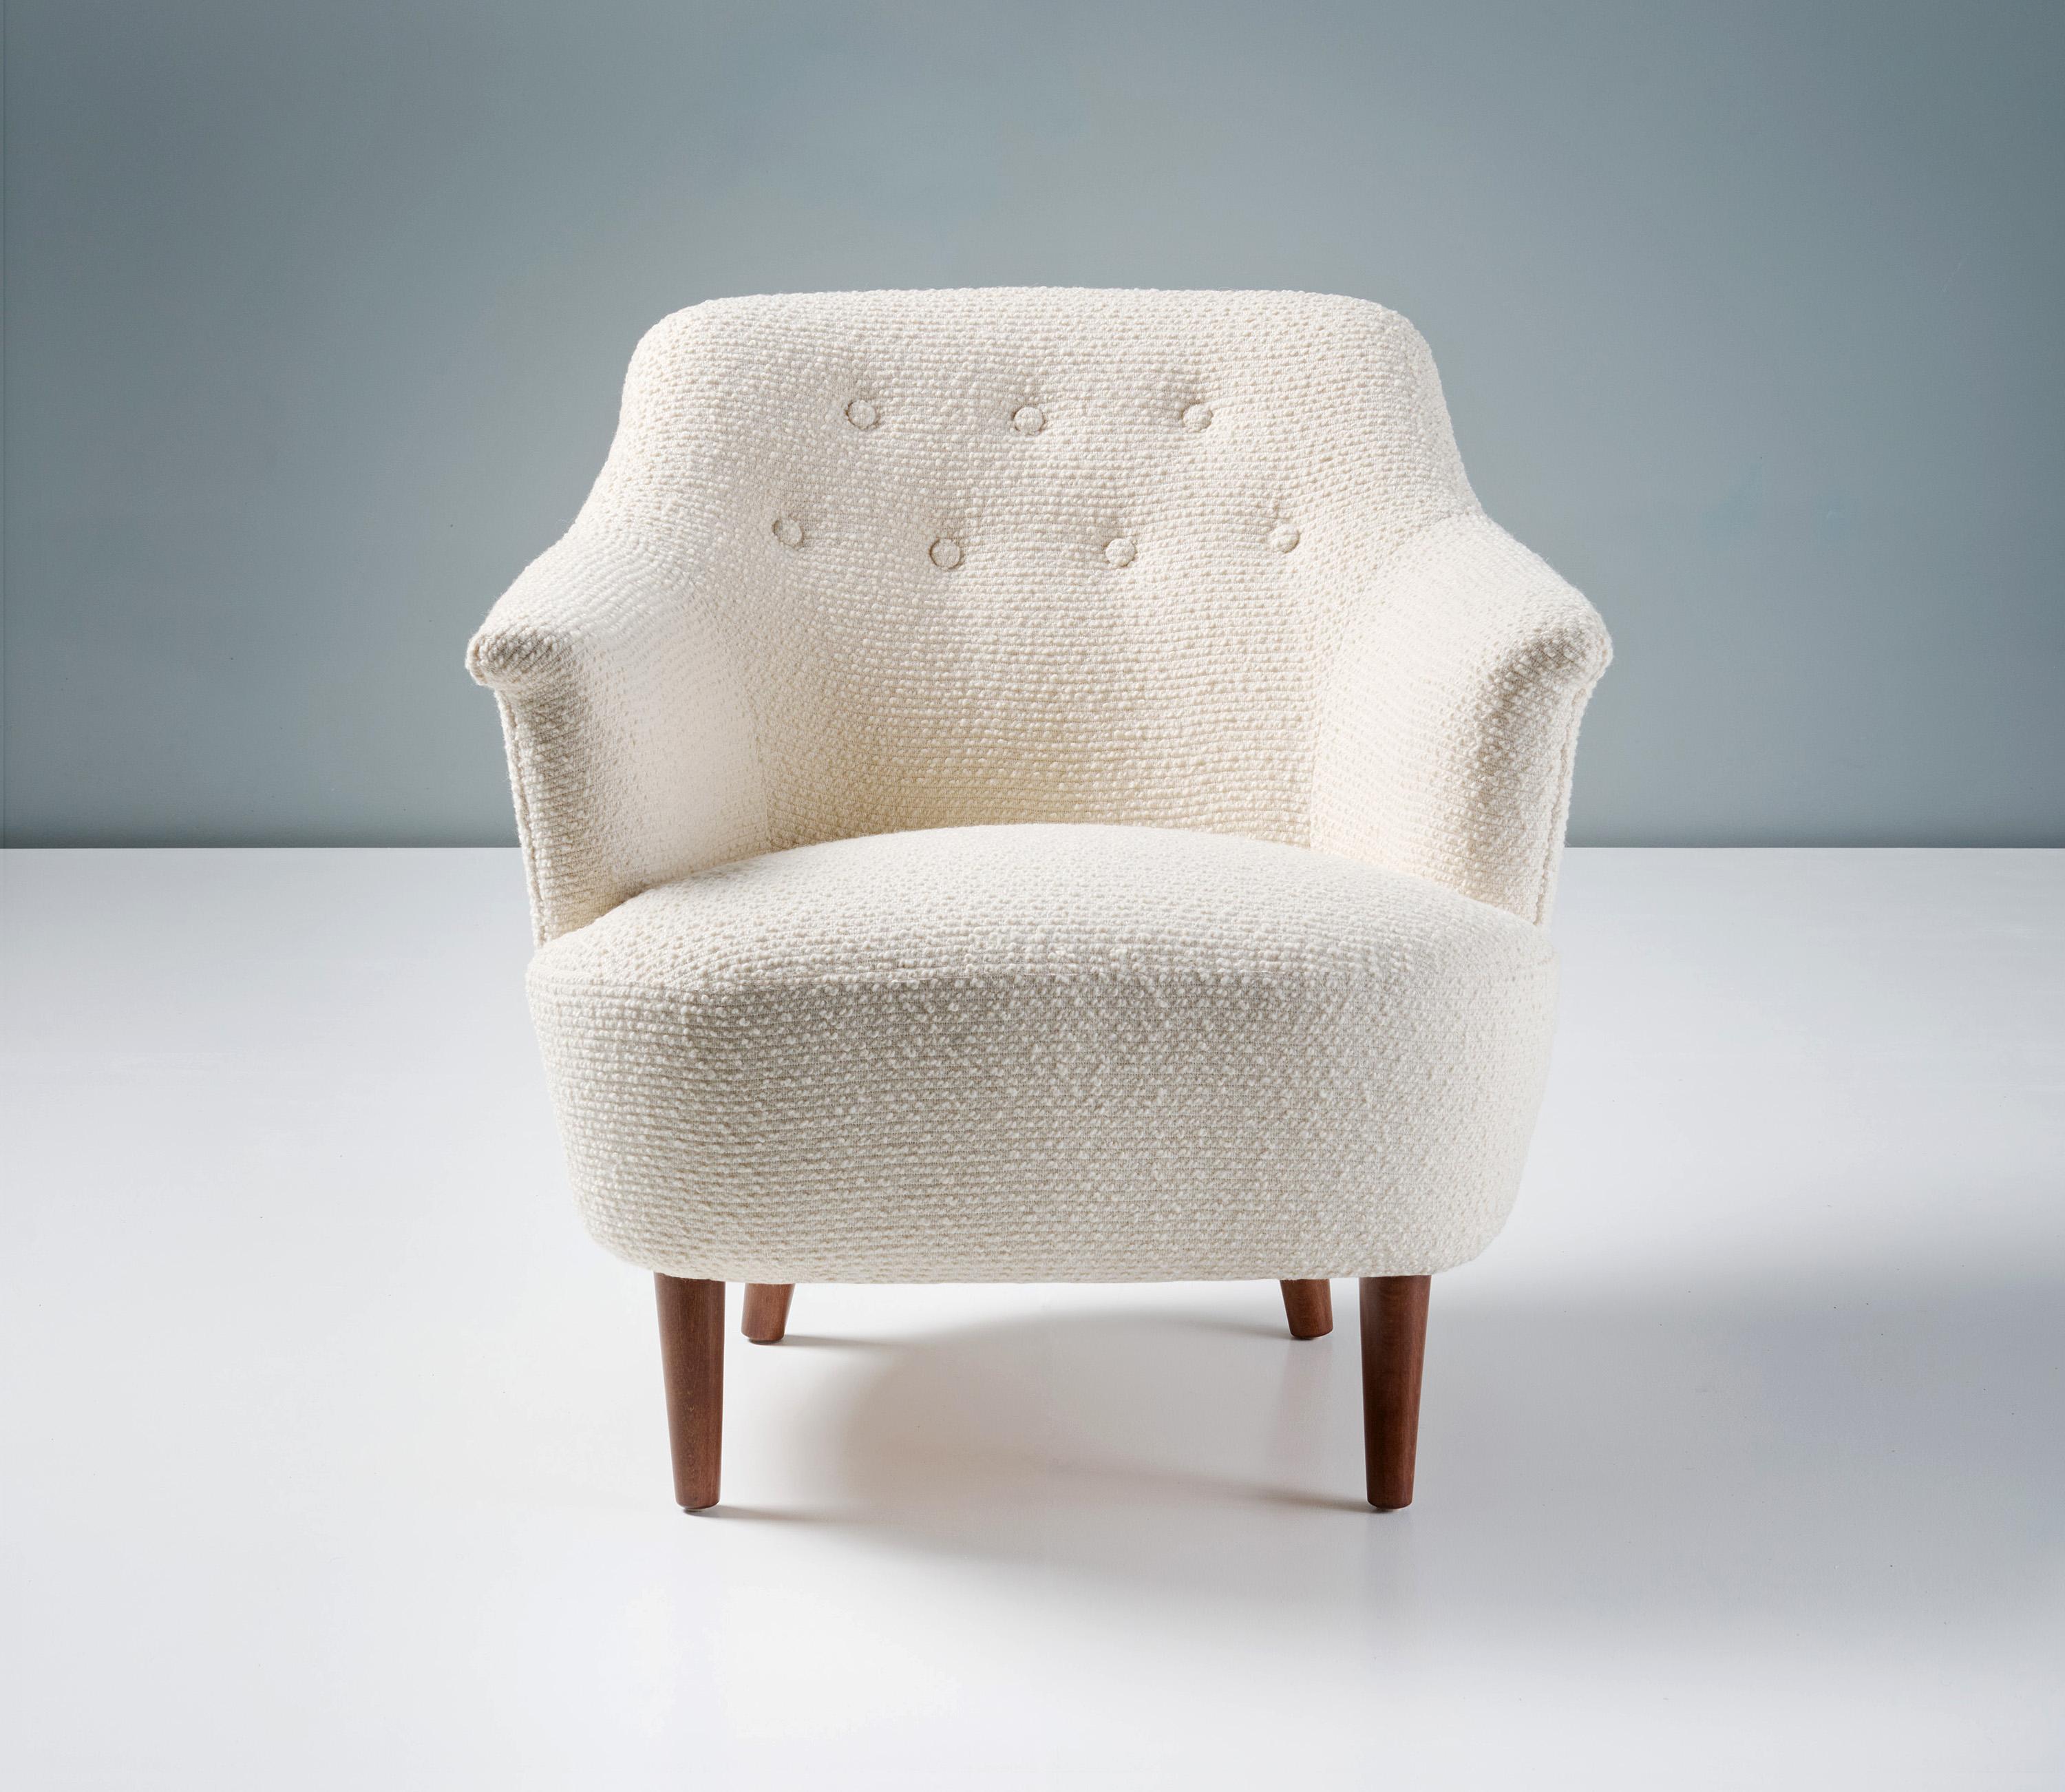 Carl Malmsten - Fauteuil d'appoint, circa 1950.

Une chaise d'appoint élégante et classique conçue par le maître suédois : Carl Malmsten. La chaise a été retapissée dans le tissu de laine texturé de la designer britannique Rose Uniacke et possède